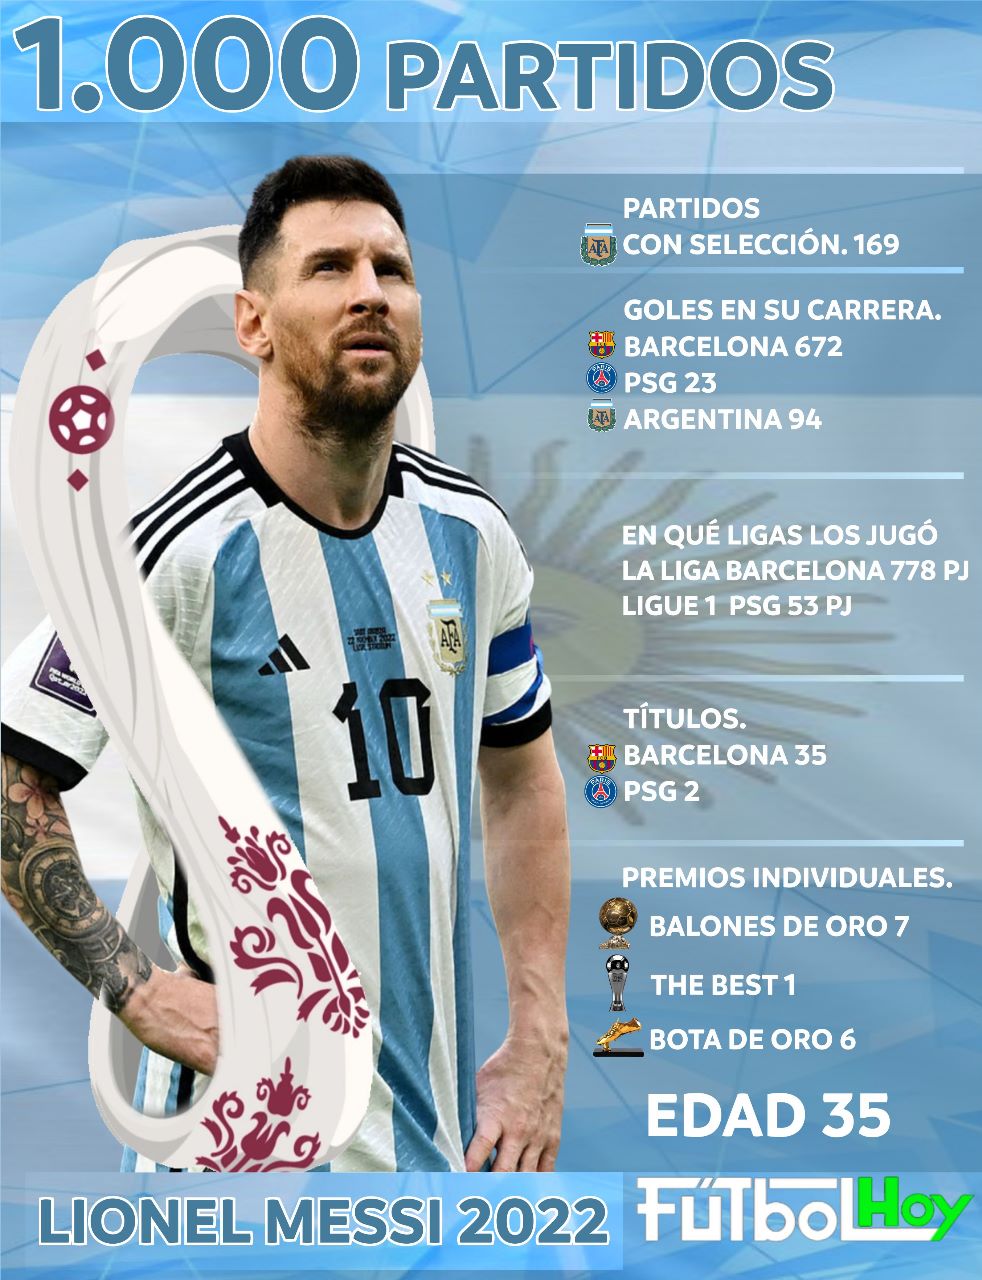 Los  partidos de Lionel Messi - Futbol Hoy